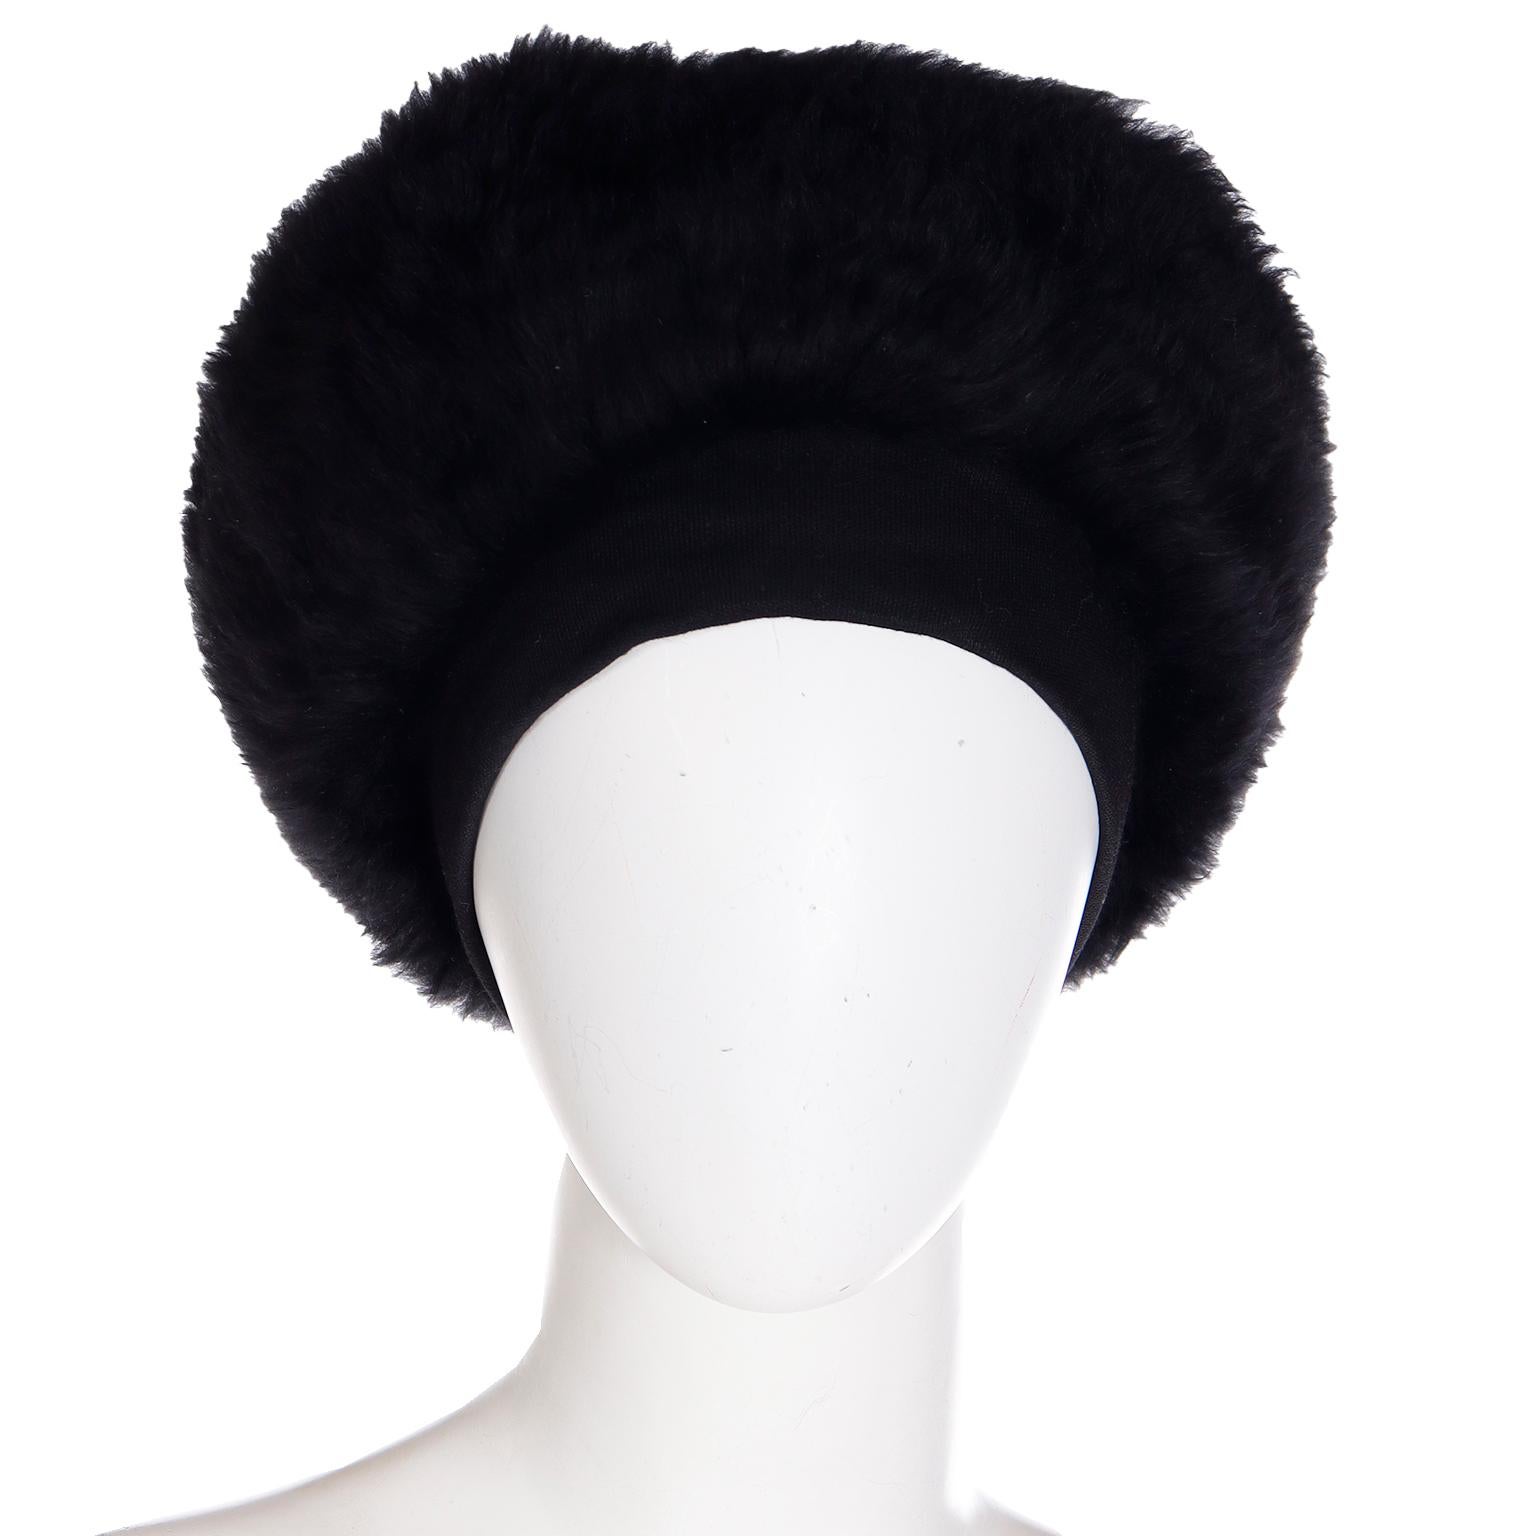 Dies ist eine große Vintage Yves Saint Laurent 1976/77 Hut  verleihen Ihnen in diesem Winter sofortigen Stil! Diese schwarze Schafspelzmütze hat ein bequemes Strickband, das mit einem Band im Nacken befestigt wird. Dieser fabelhafte Hut wurde in den